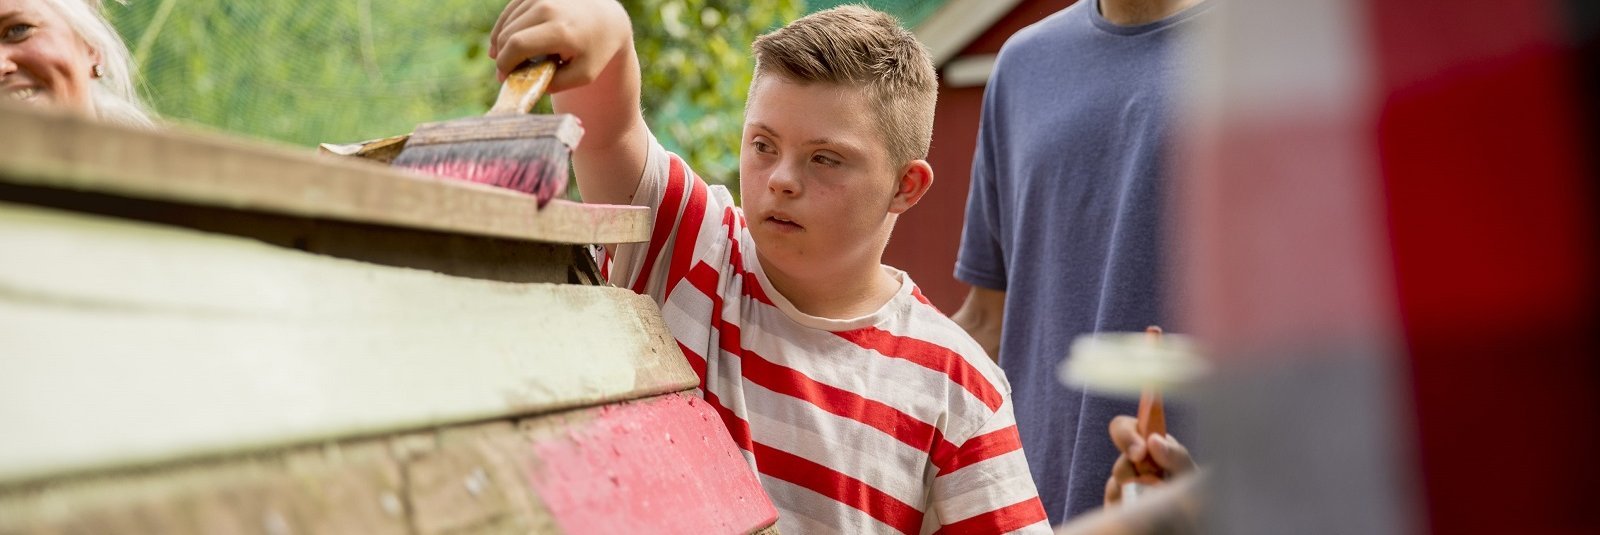 Kind mit Behinderung und junger Mann streichen Holzbauprojekt